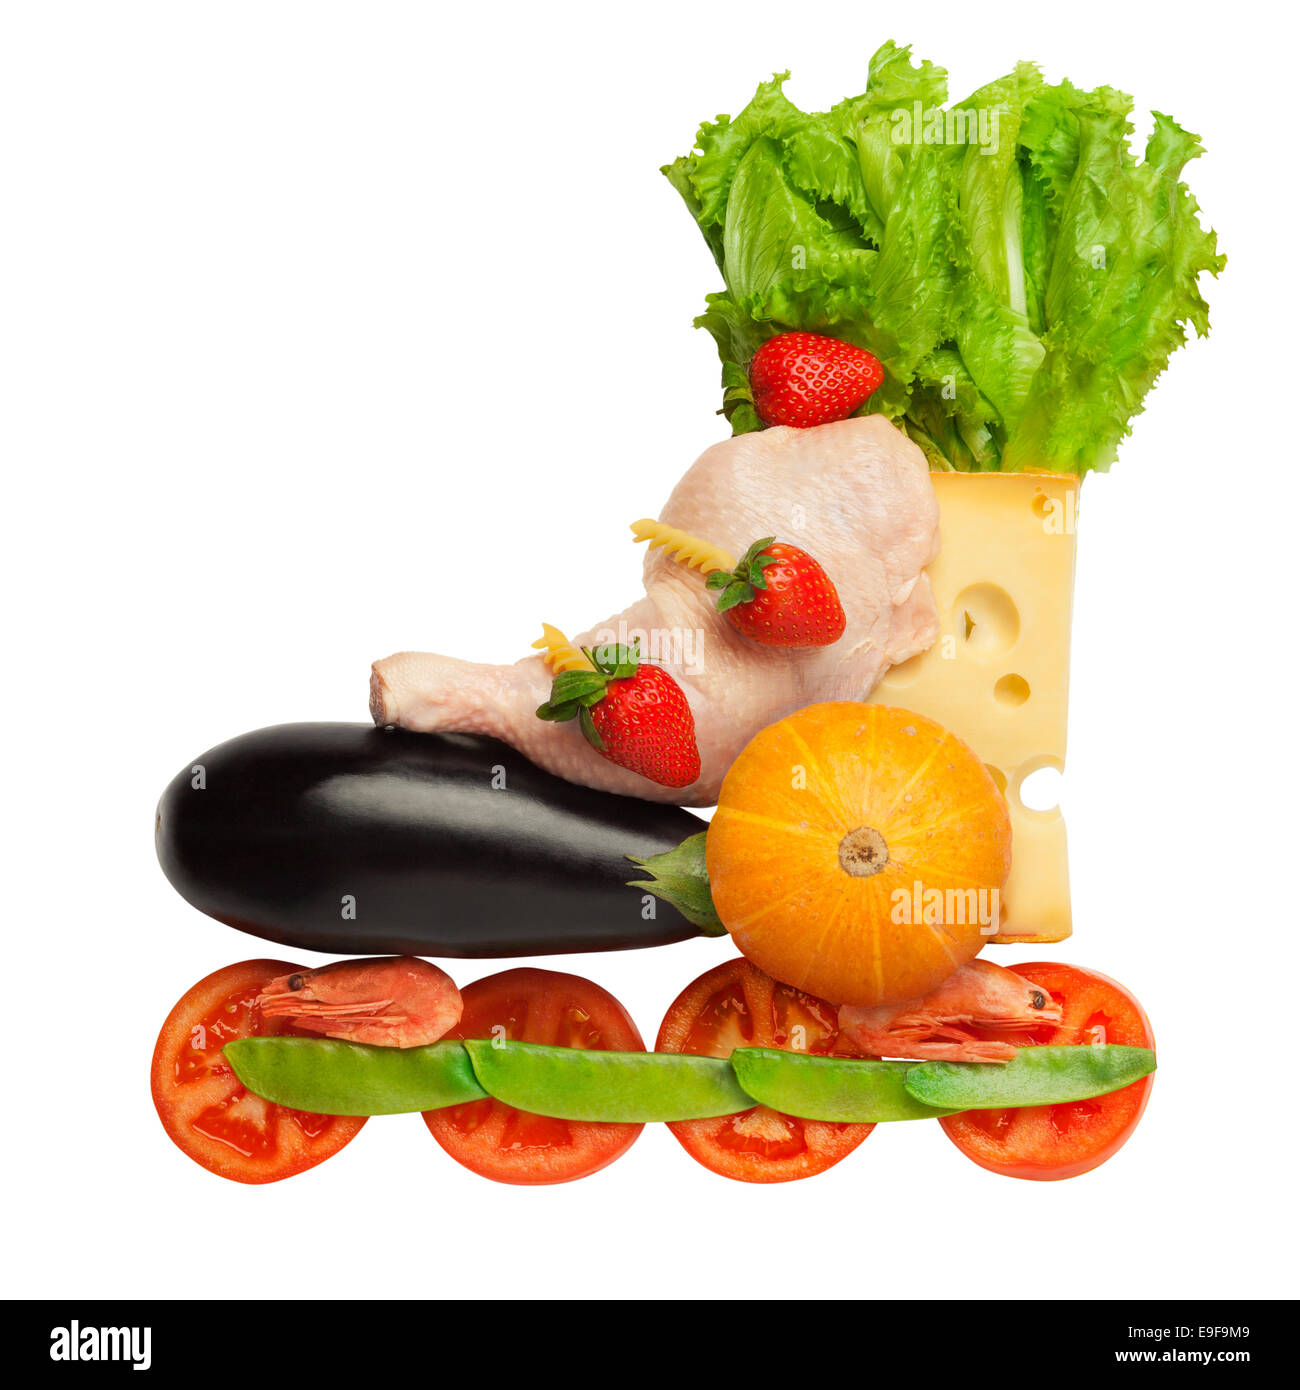 Alimentazione sana in un corpo sano: fitness come uno stile di vita. Foto Stock